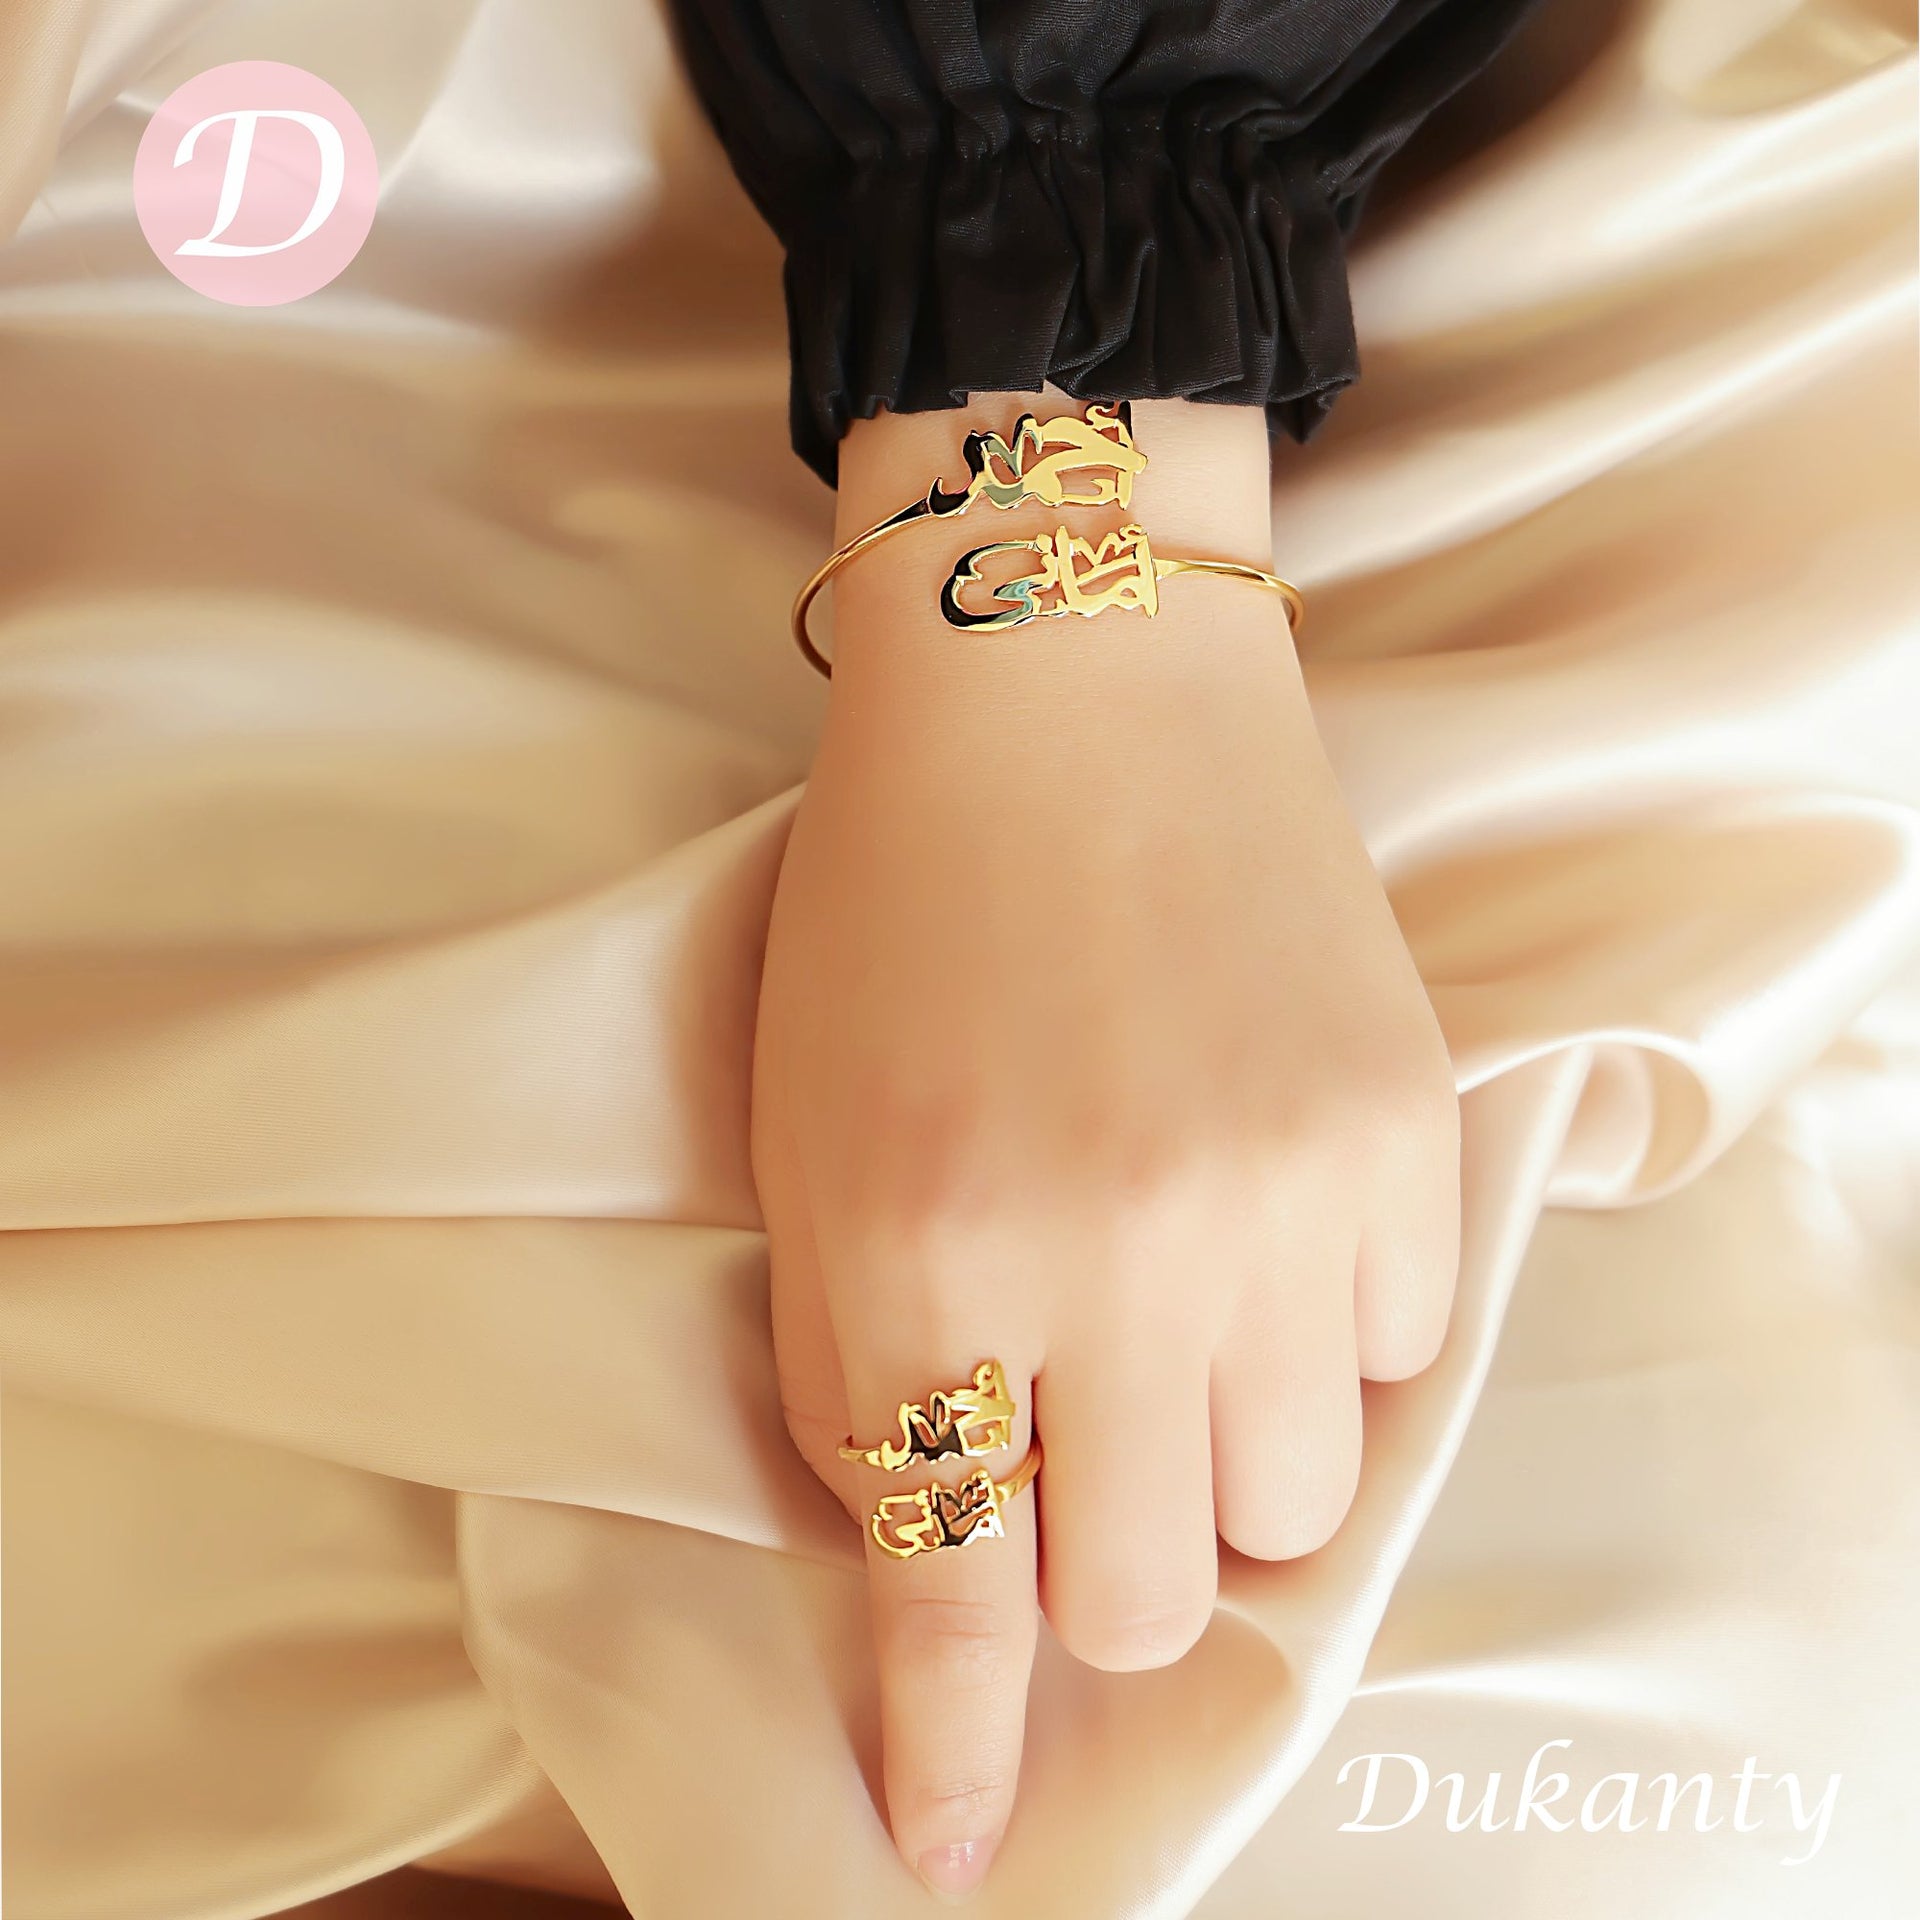 Customized Jewelry - Dukanty